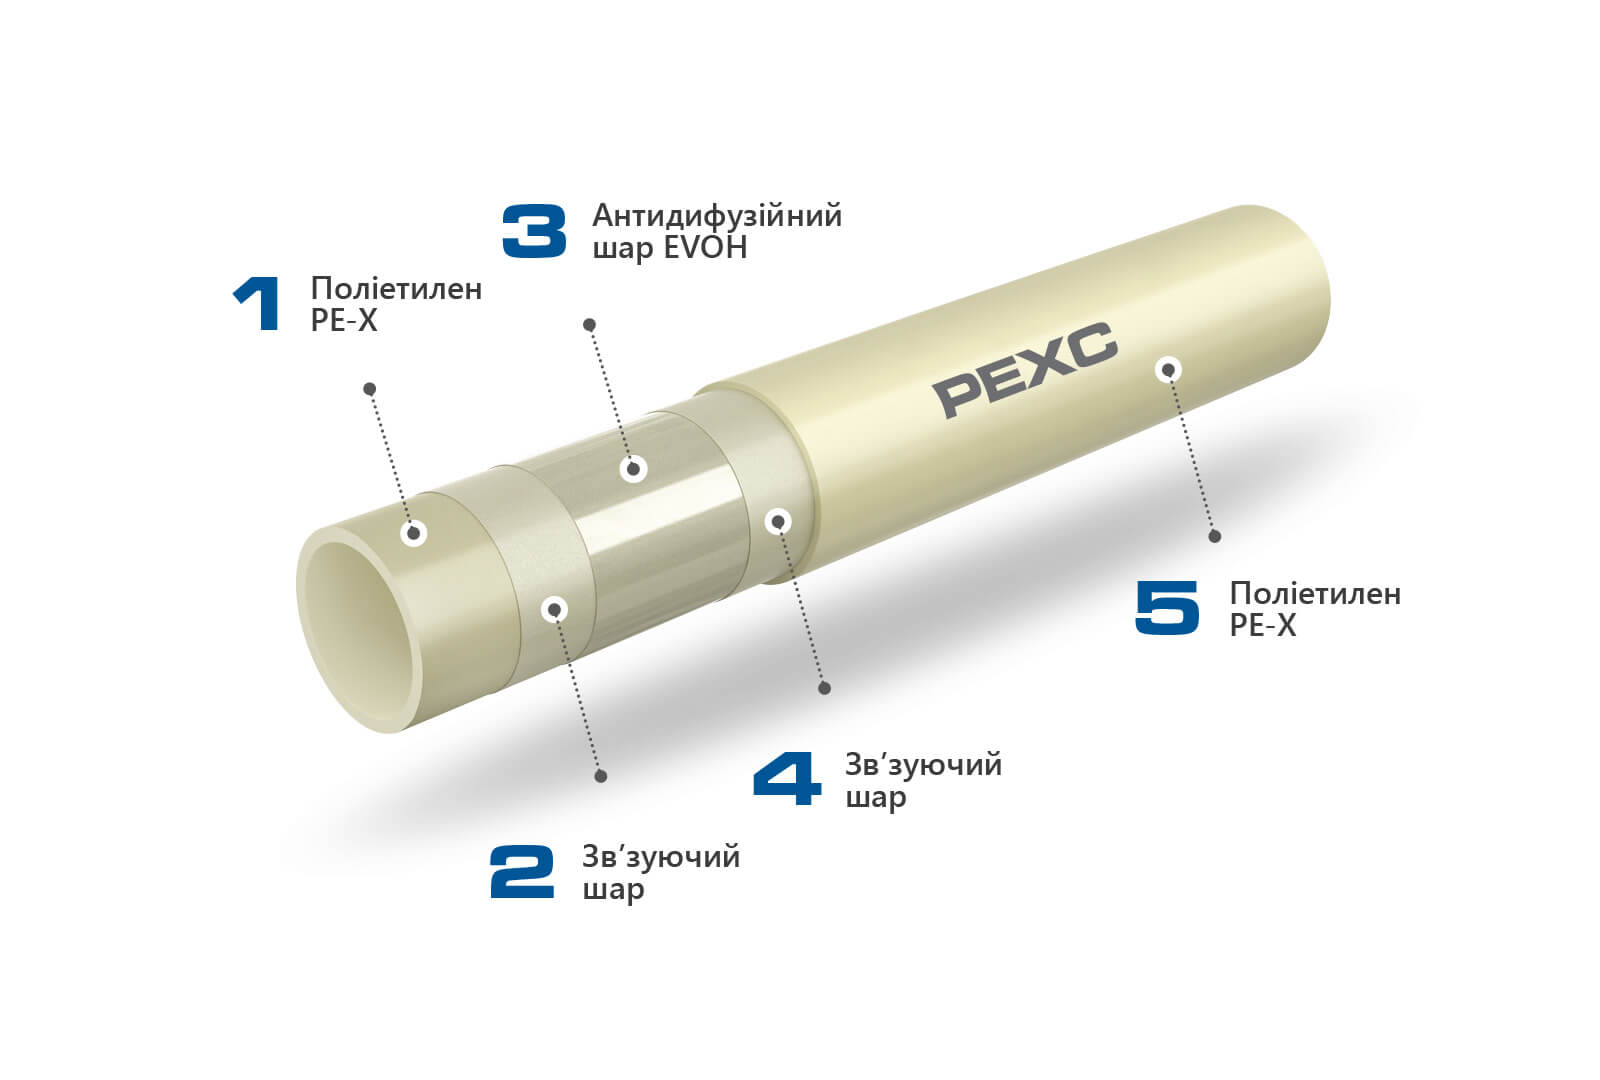 KAN-therm - Push System - Зображення труб PE-Xc з описом і розподілом шарів.